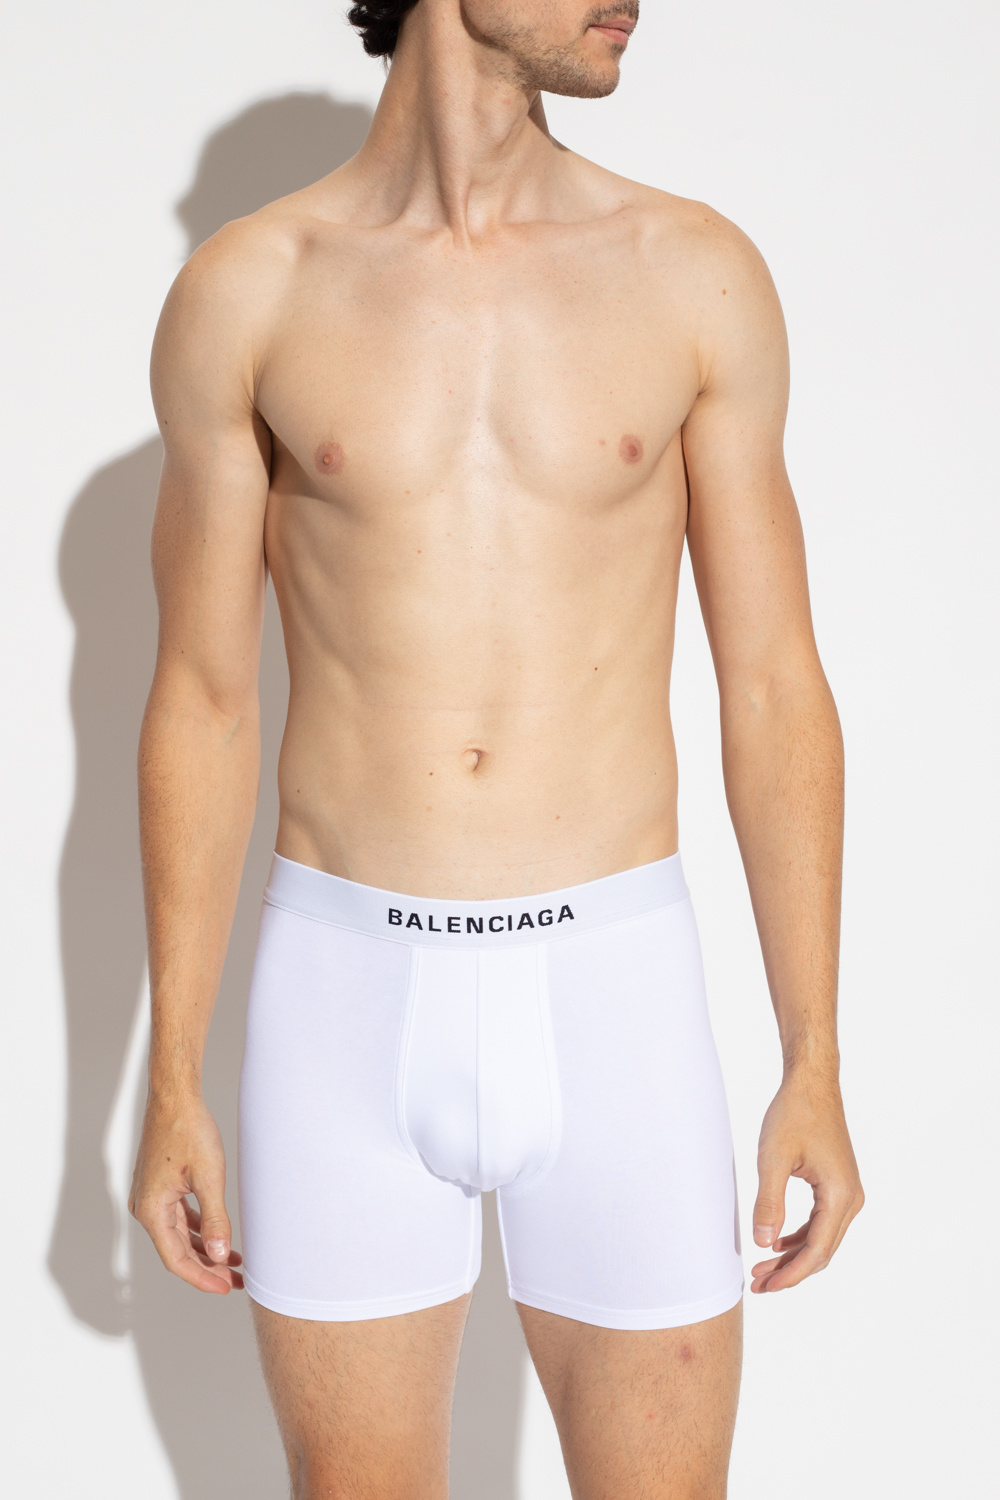 Onset Diskurs blanding Balenciaga Boxers with logo | Men's Clothing | Vitkac